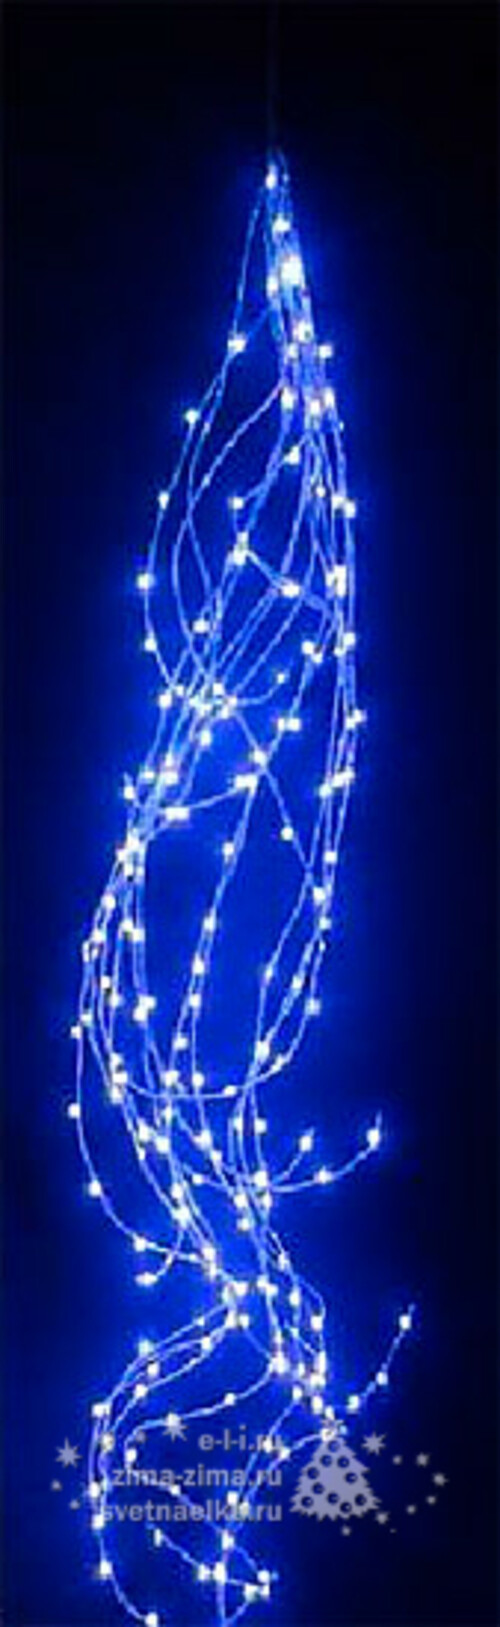 Гирлянда Лучи Росы 20*1.5 м, 350 синих MINILED ламп, серебряная проволока BEAUTY LED